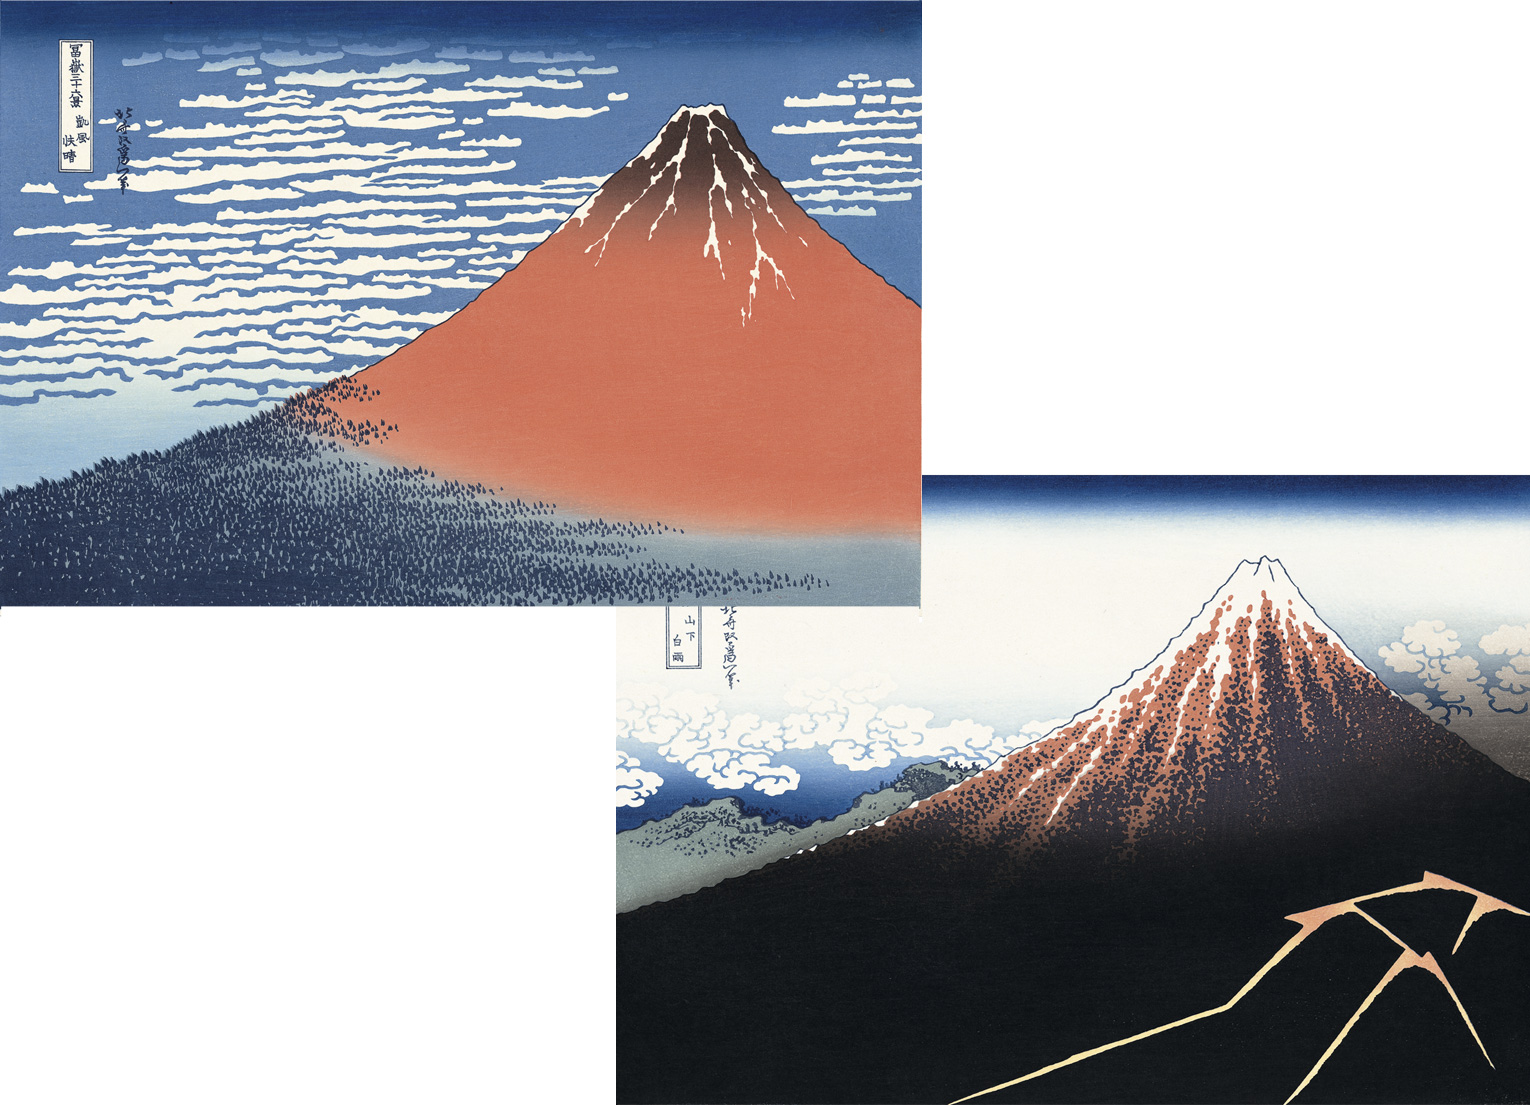 北斎が描いた双子の富士山 赤富士 黒富士 北斎今昔 もっと知りたい 浮世絵の 今 と むかし